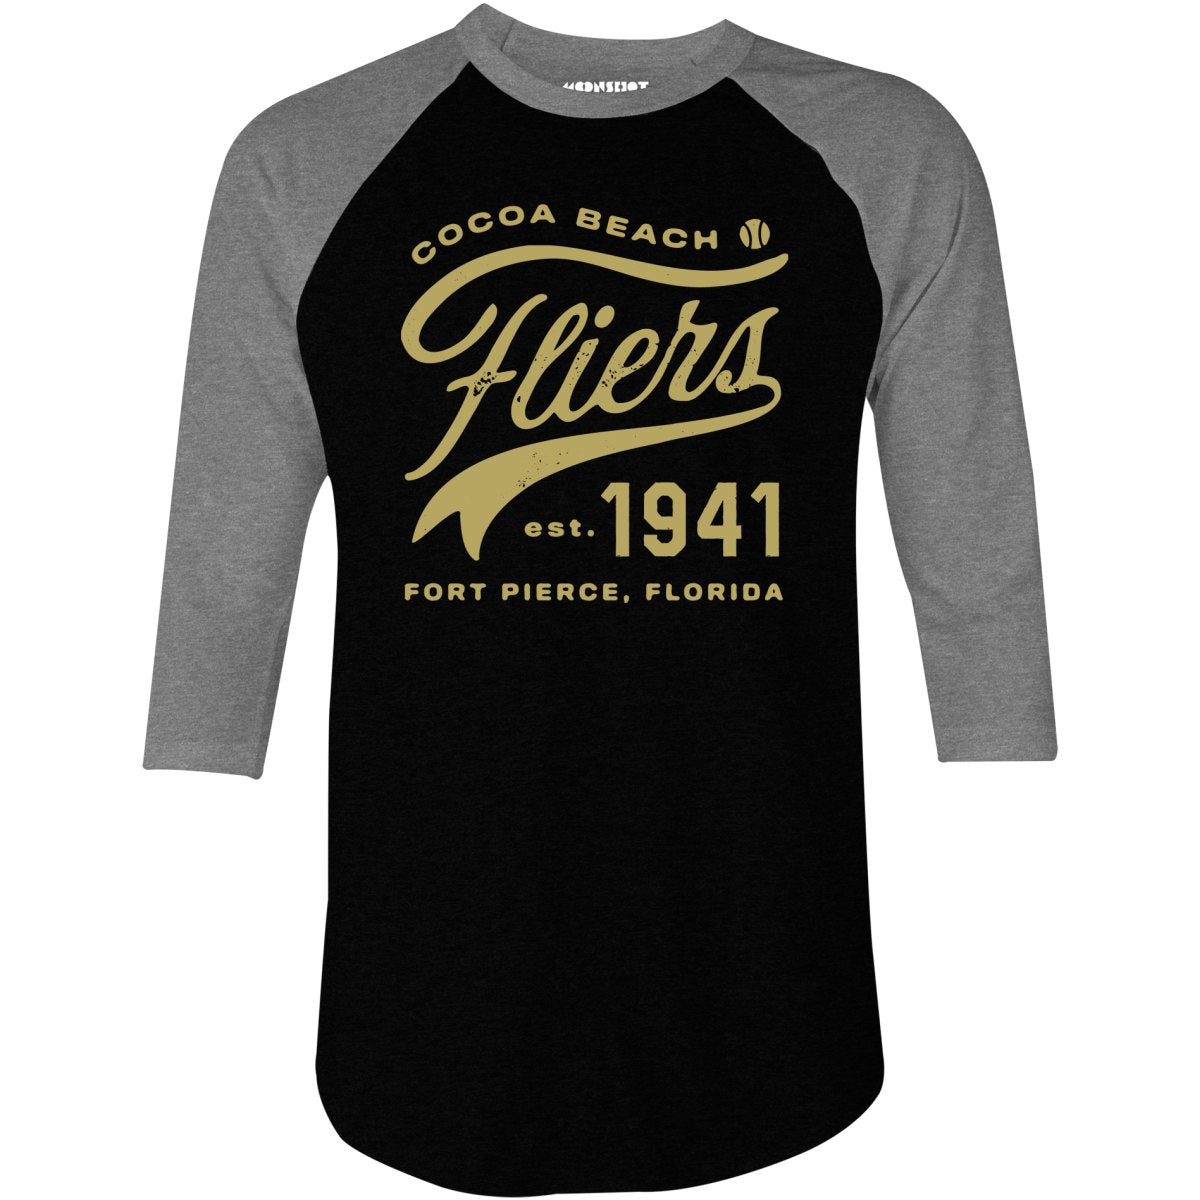 Cocoa Beach Fliers - Florida - Vintage Defunct Baseball Teams - 3/4 Sleeve Raglan T-Shirt